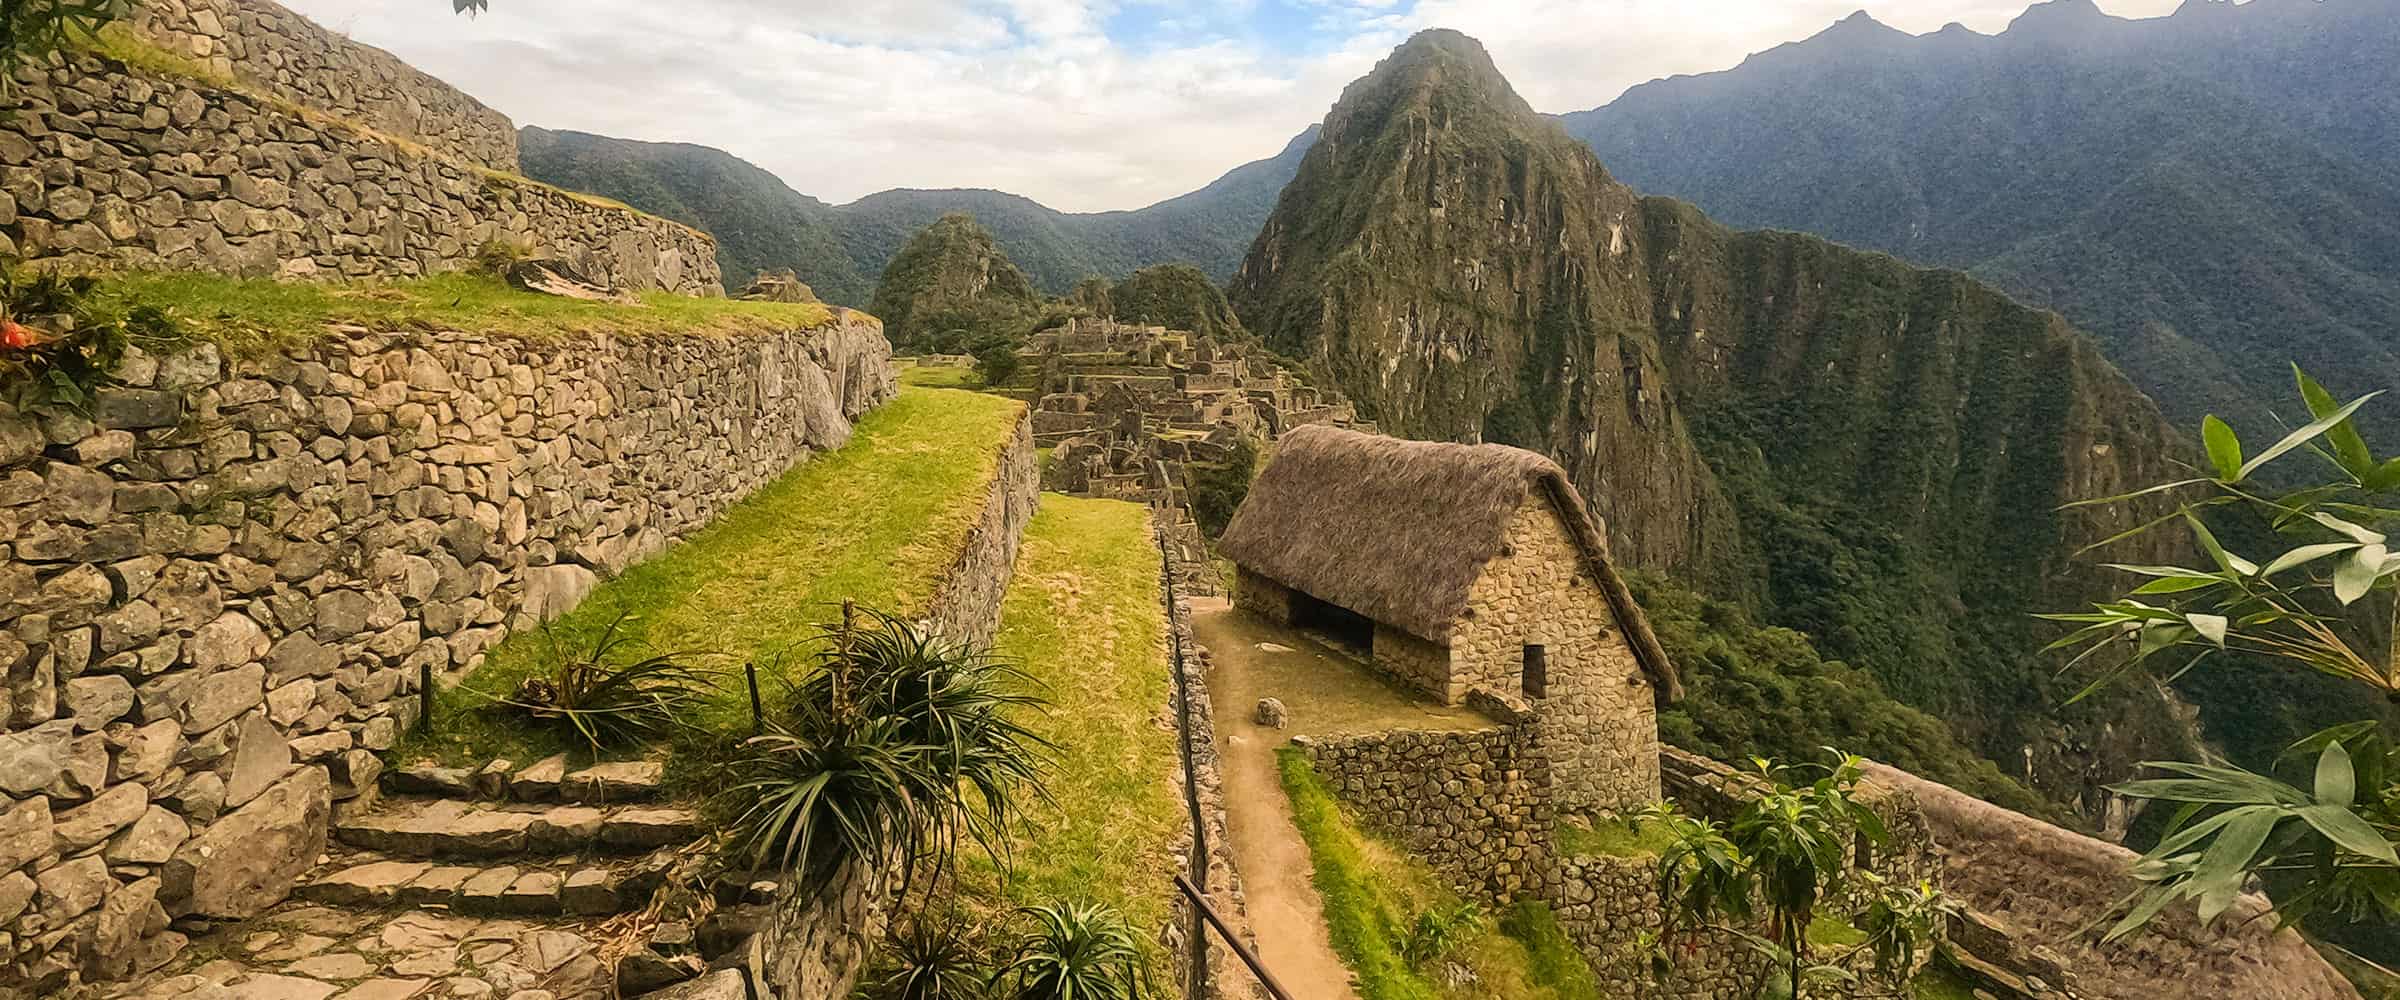 Machu Picchu tours from Cusco Perú